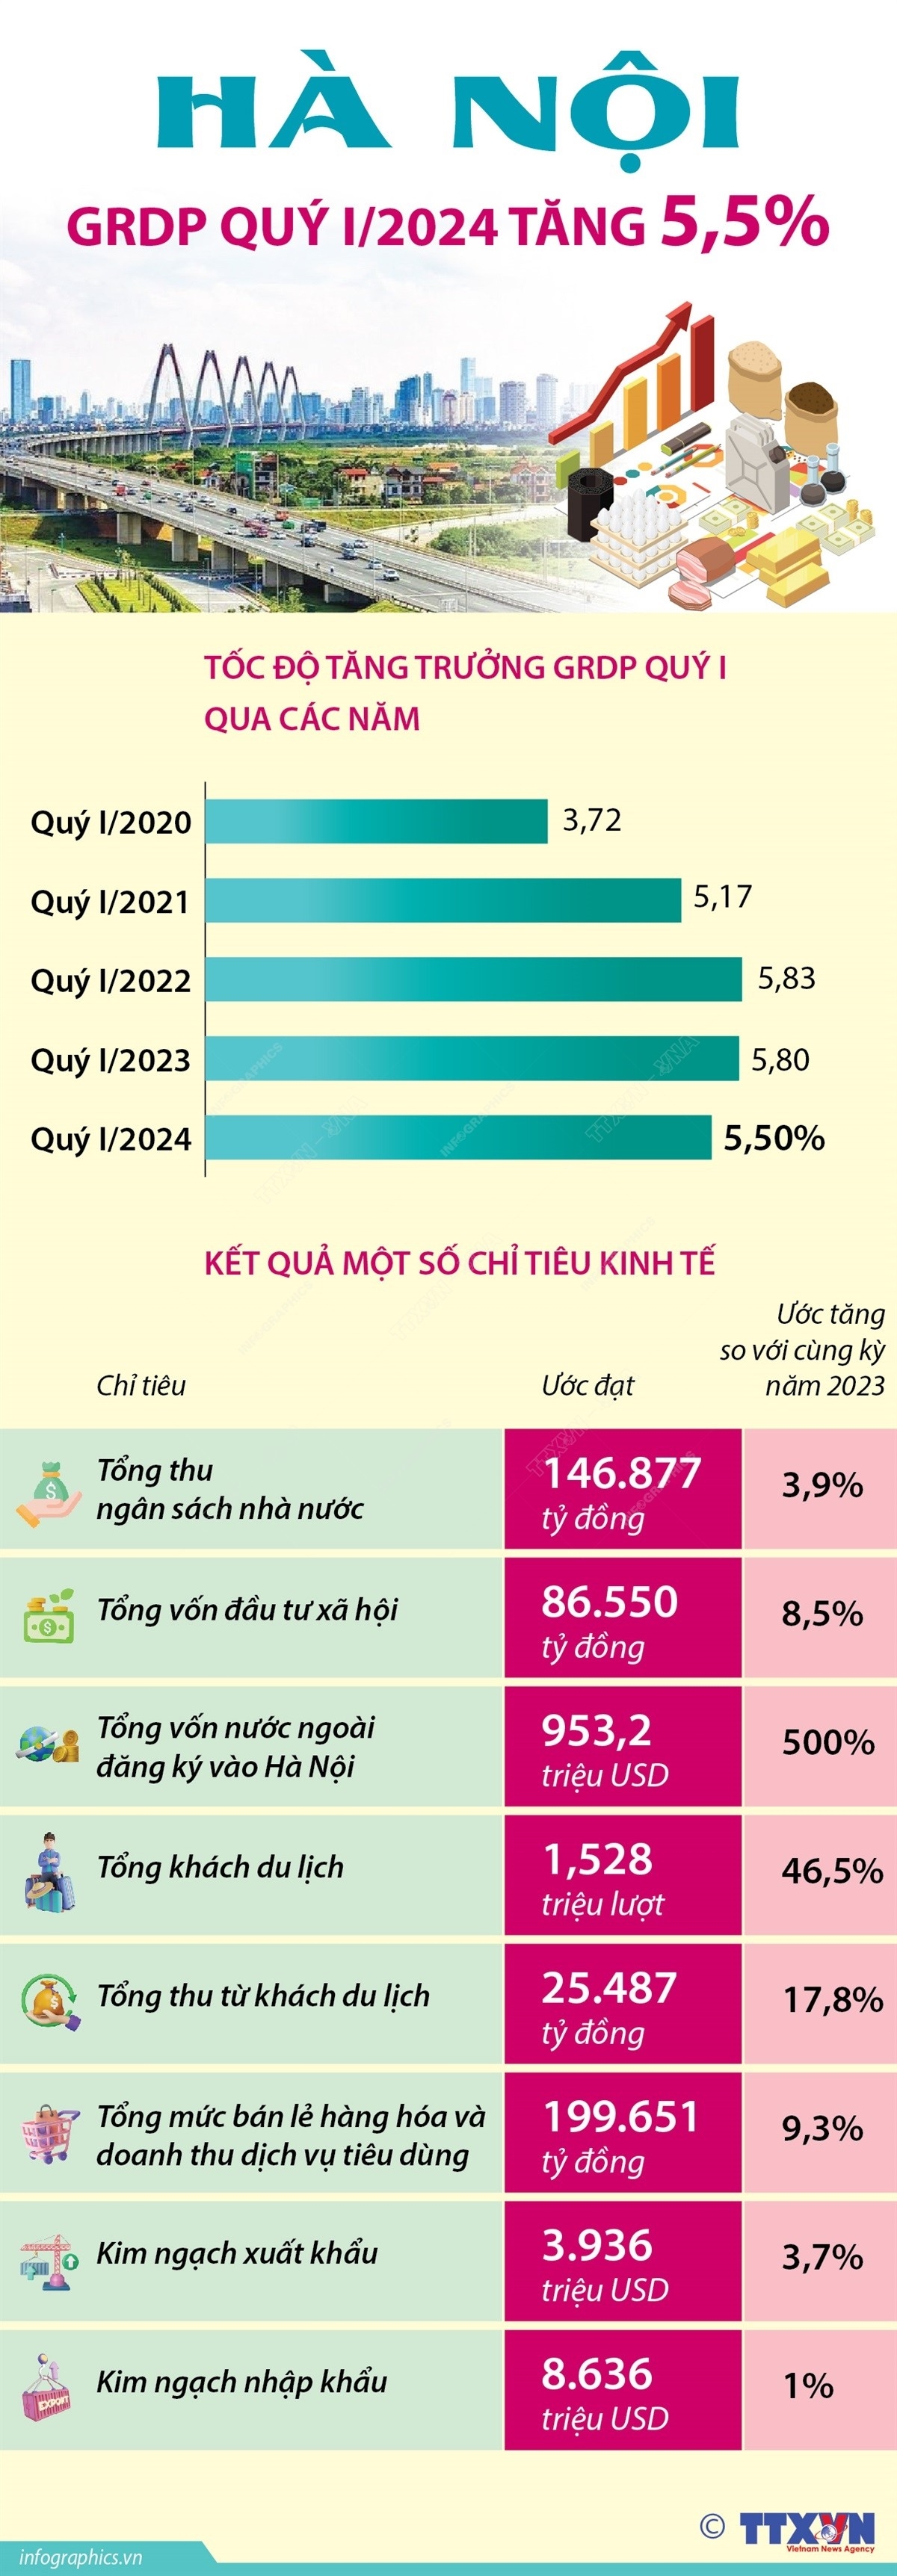 Hà Nội: Tổng sản phẩm trên địa bàn quý 1 năm 2024 tăng 5,5%